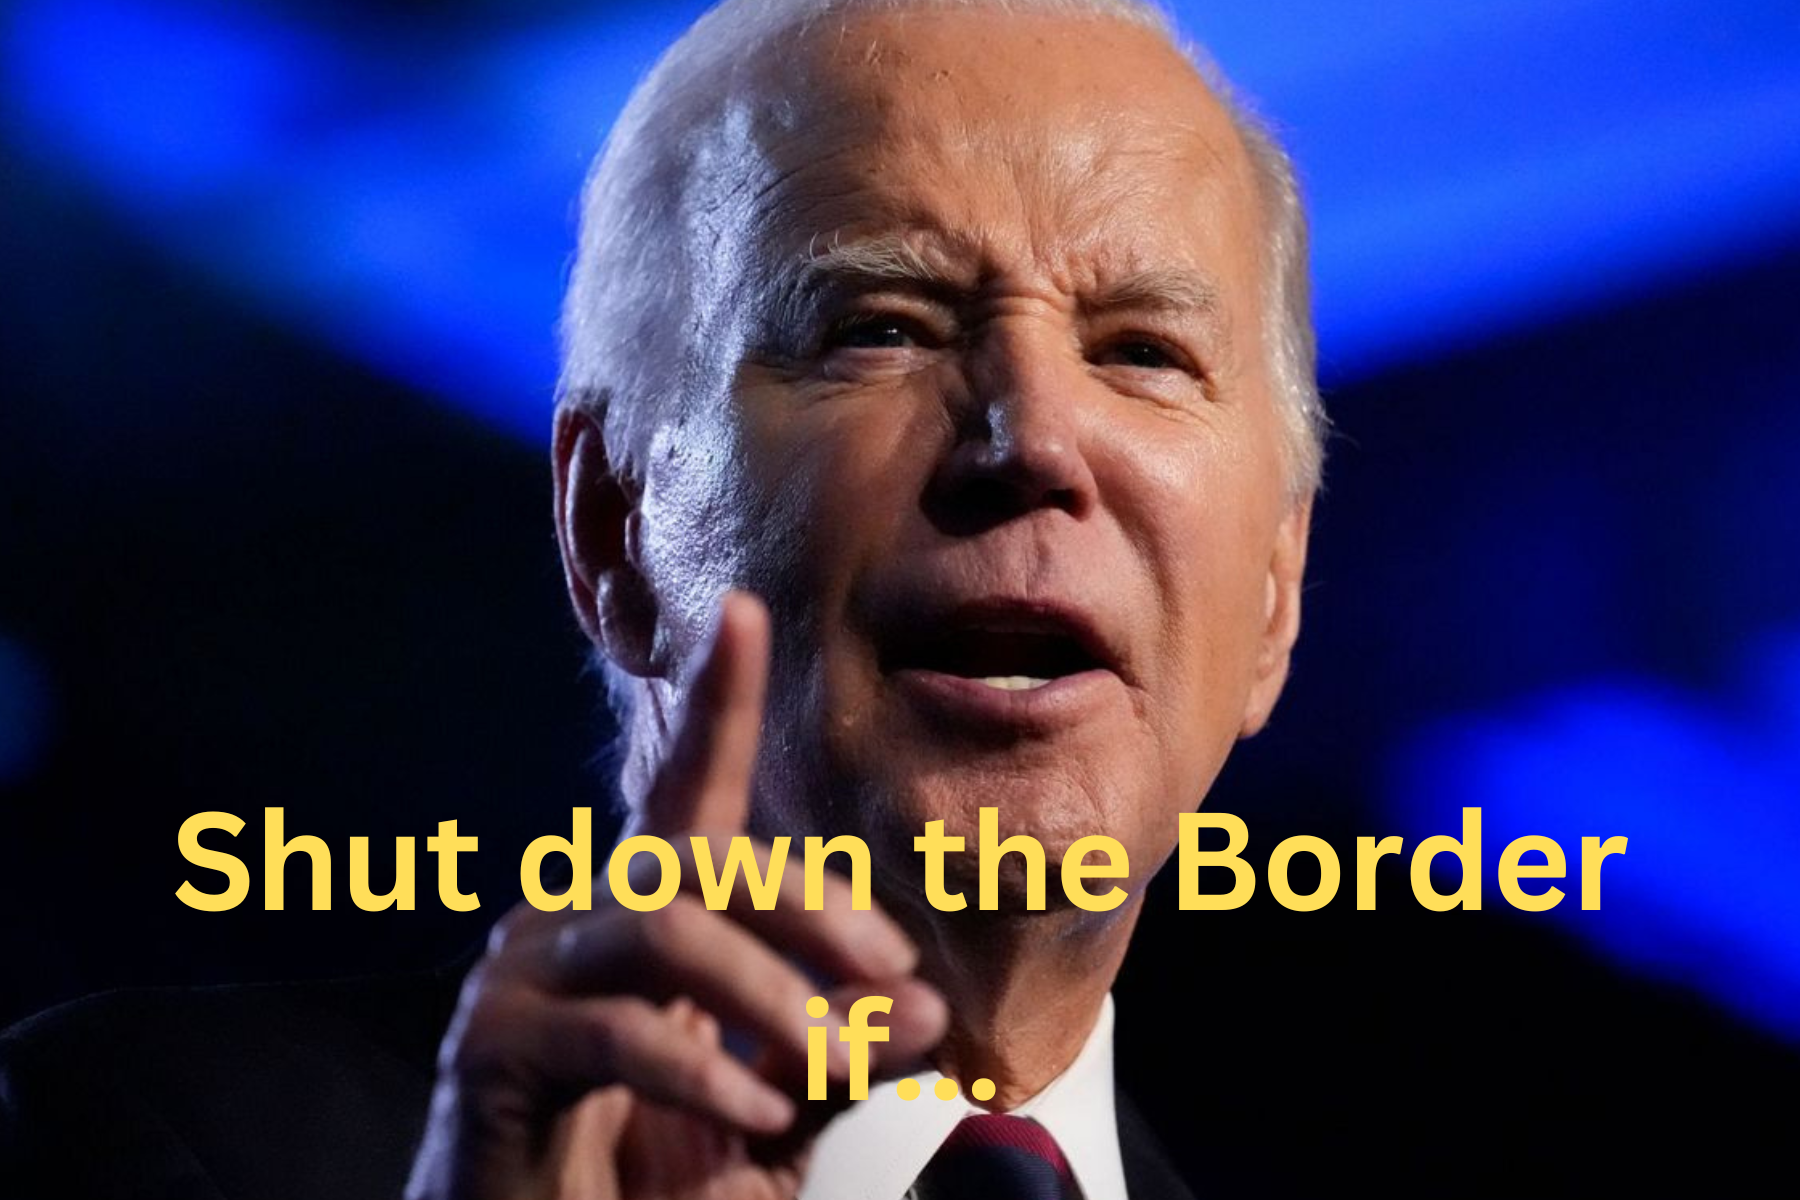 President Biden Shut down the border